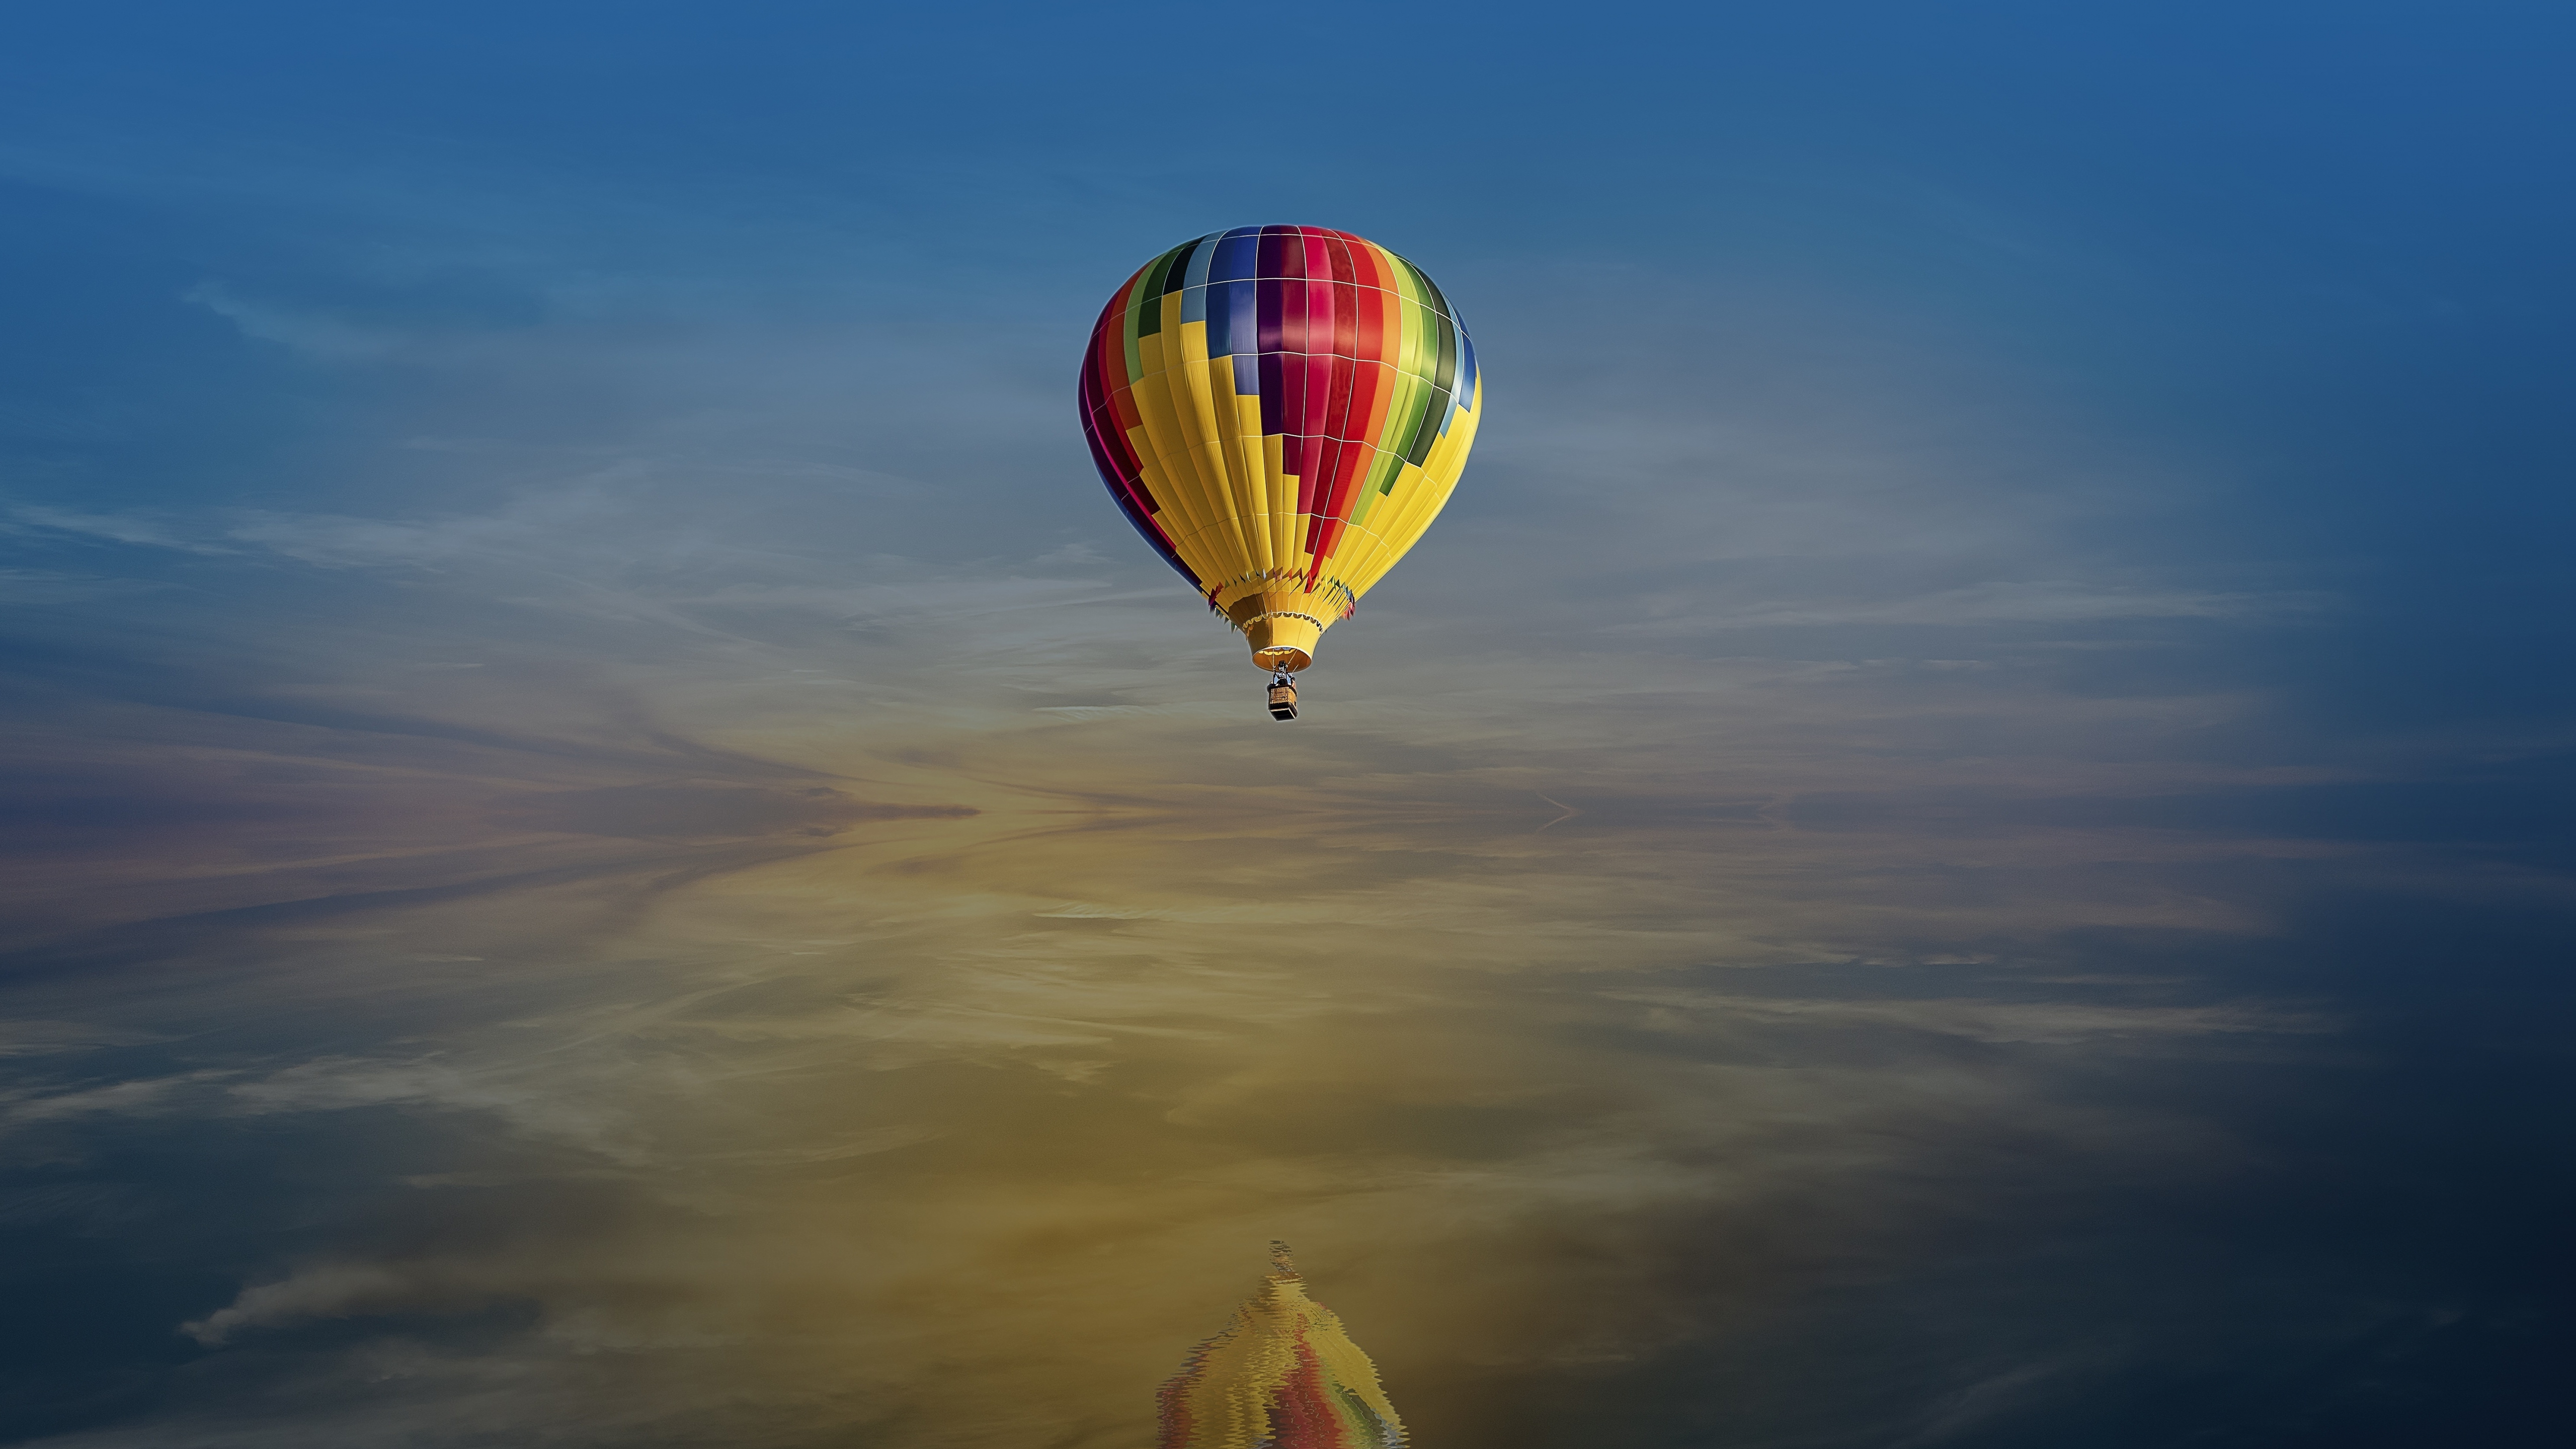 Шар над морем. Воздушные шары на голубом небе. Обои воздушные шары. Картинки с воздушными шарами красивые. Клёвые картинки воздушные.